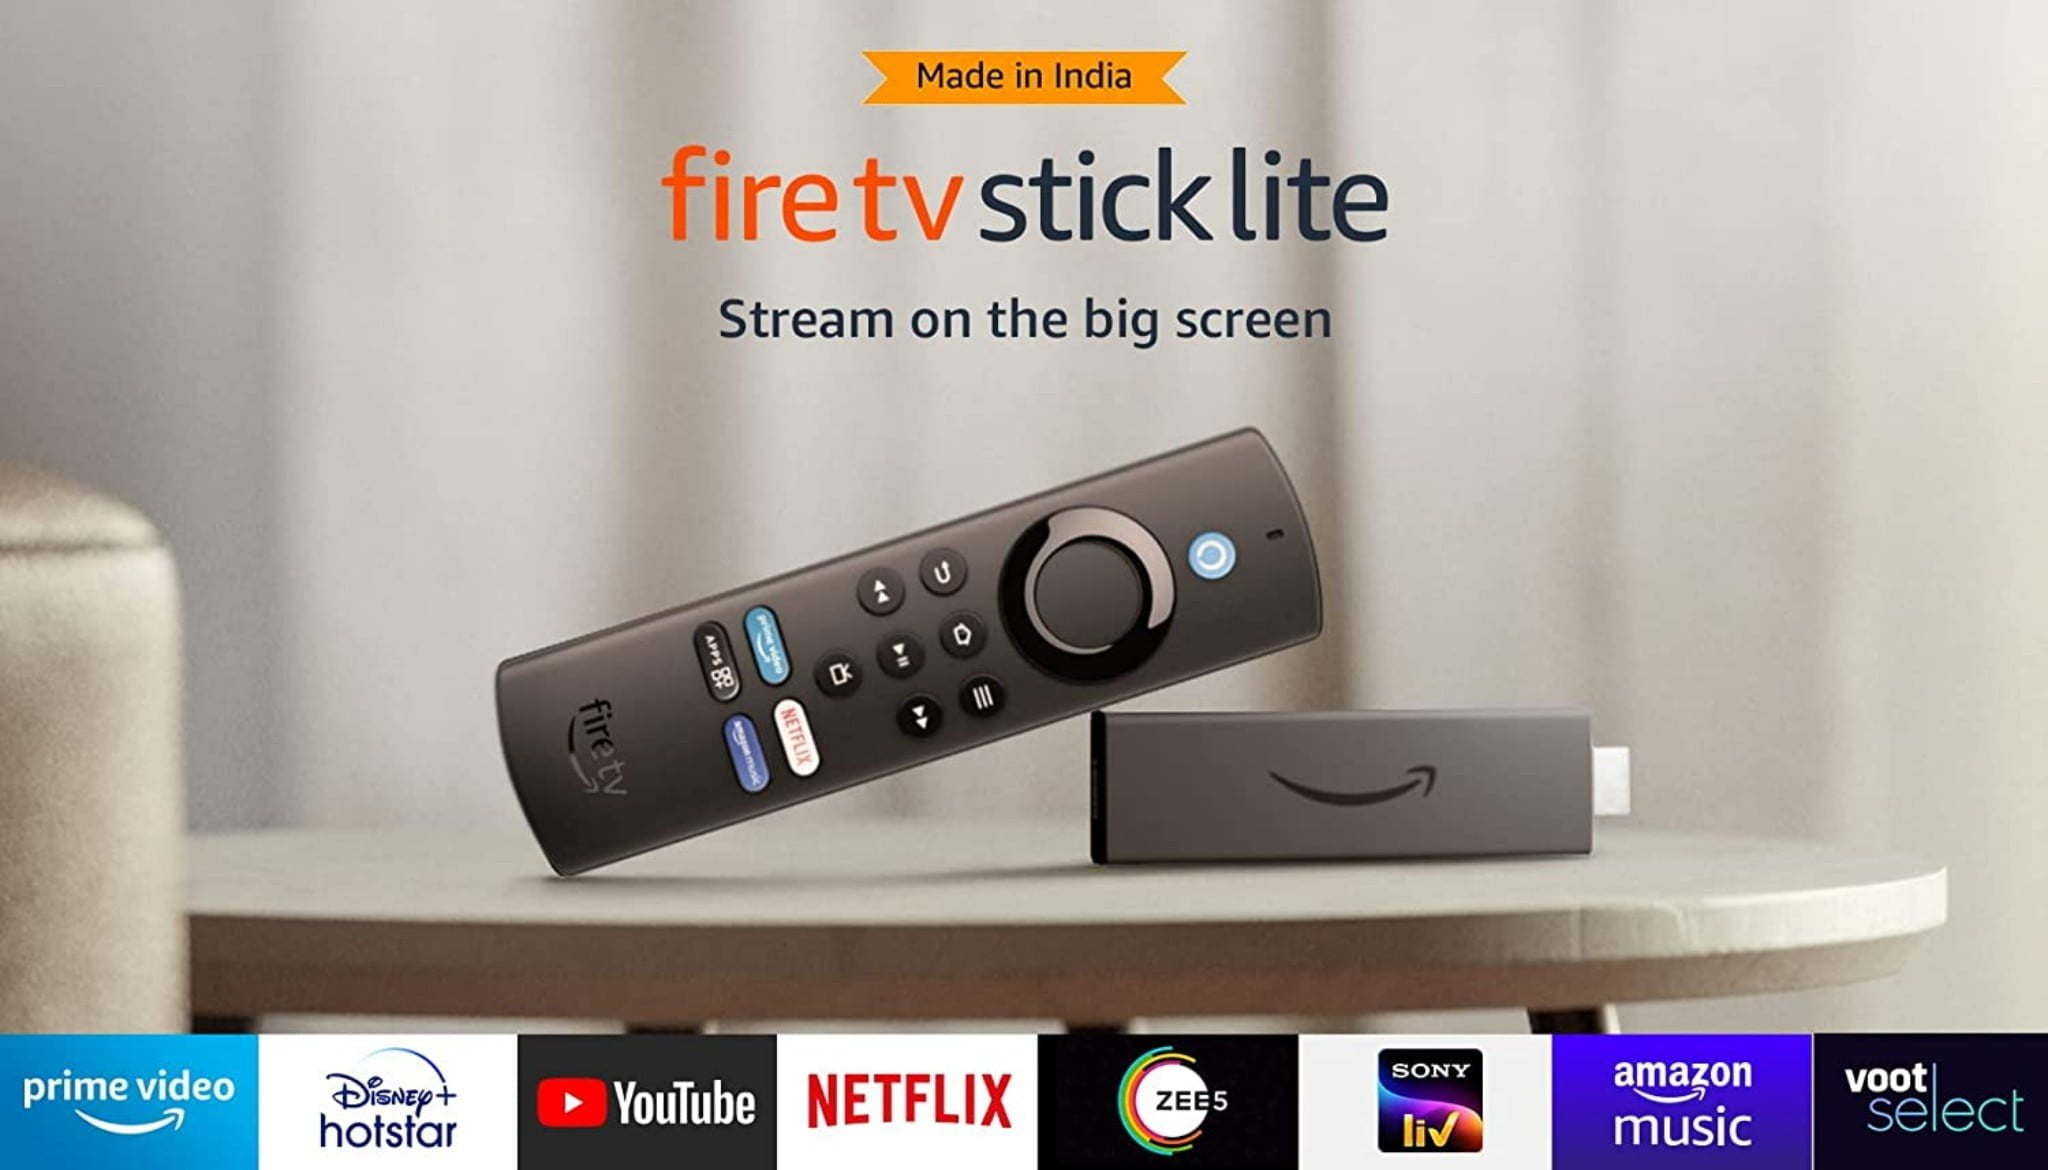 announces next-gen Fire TV Stick, Fire TV Stick Lite, and